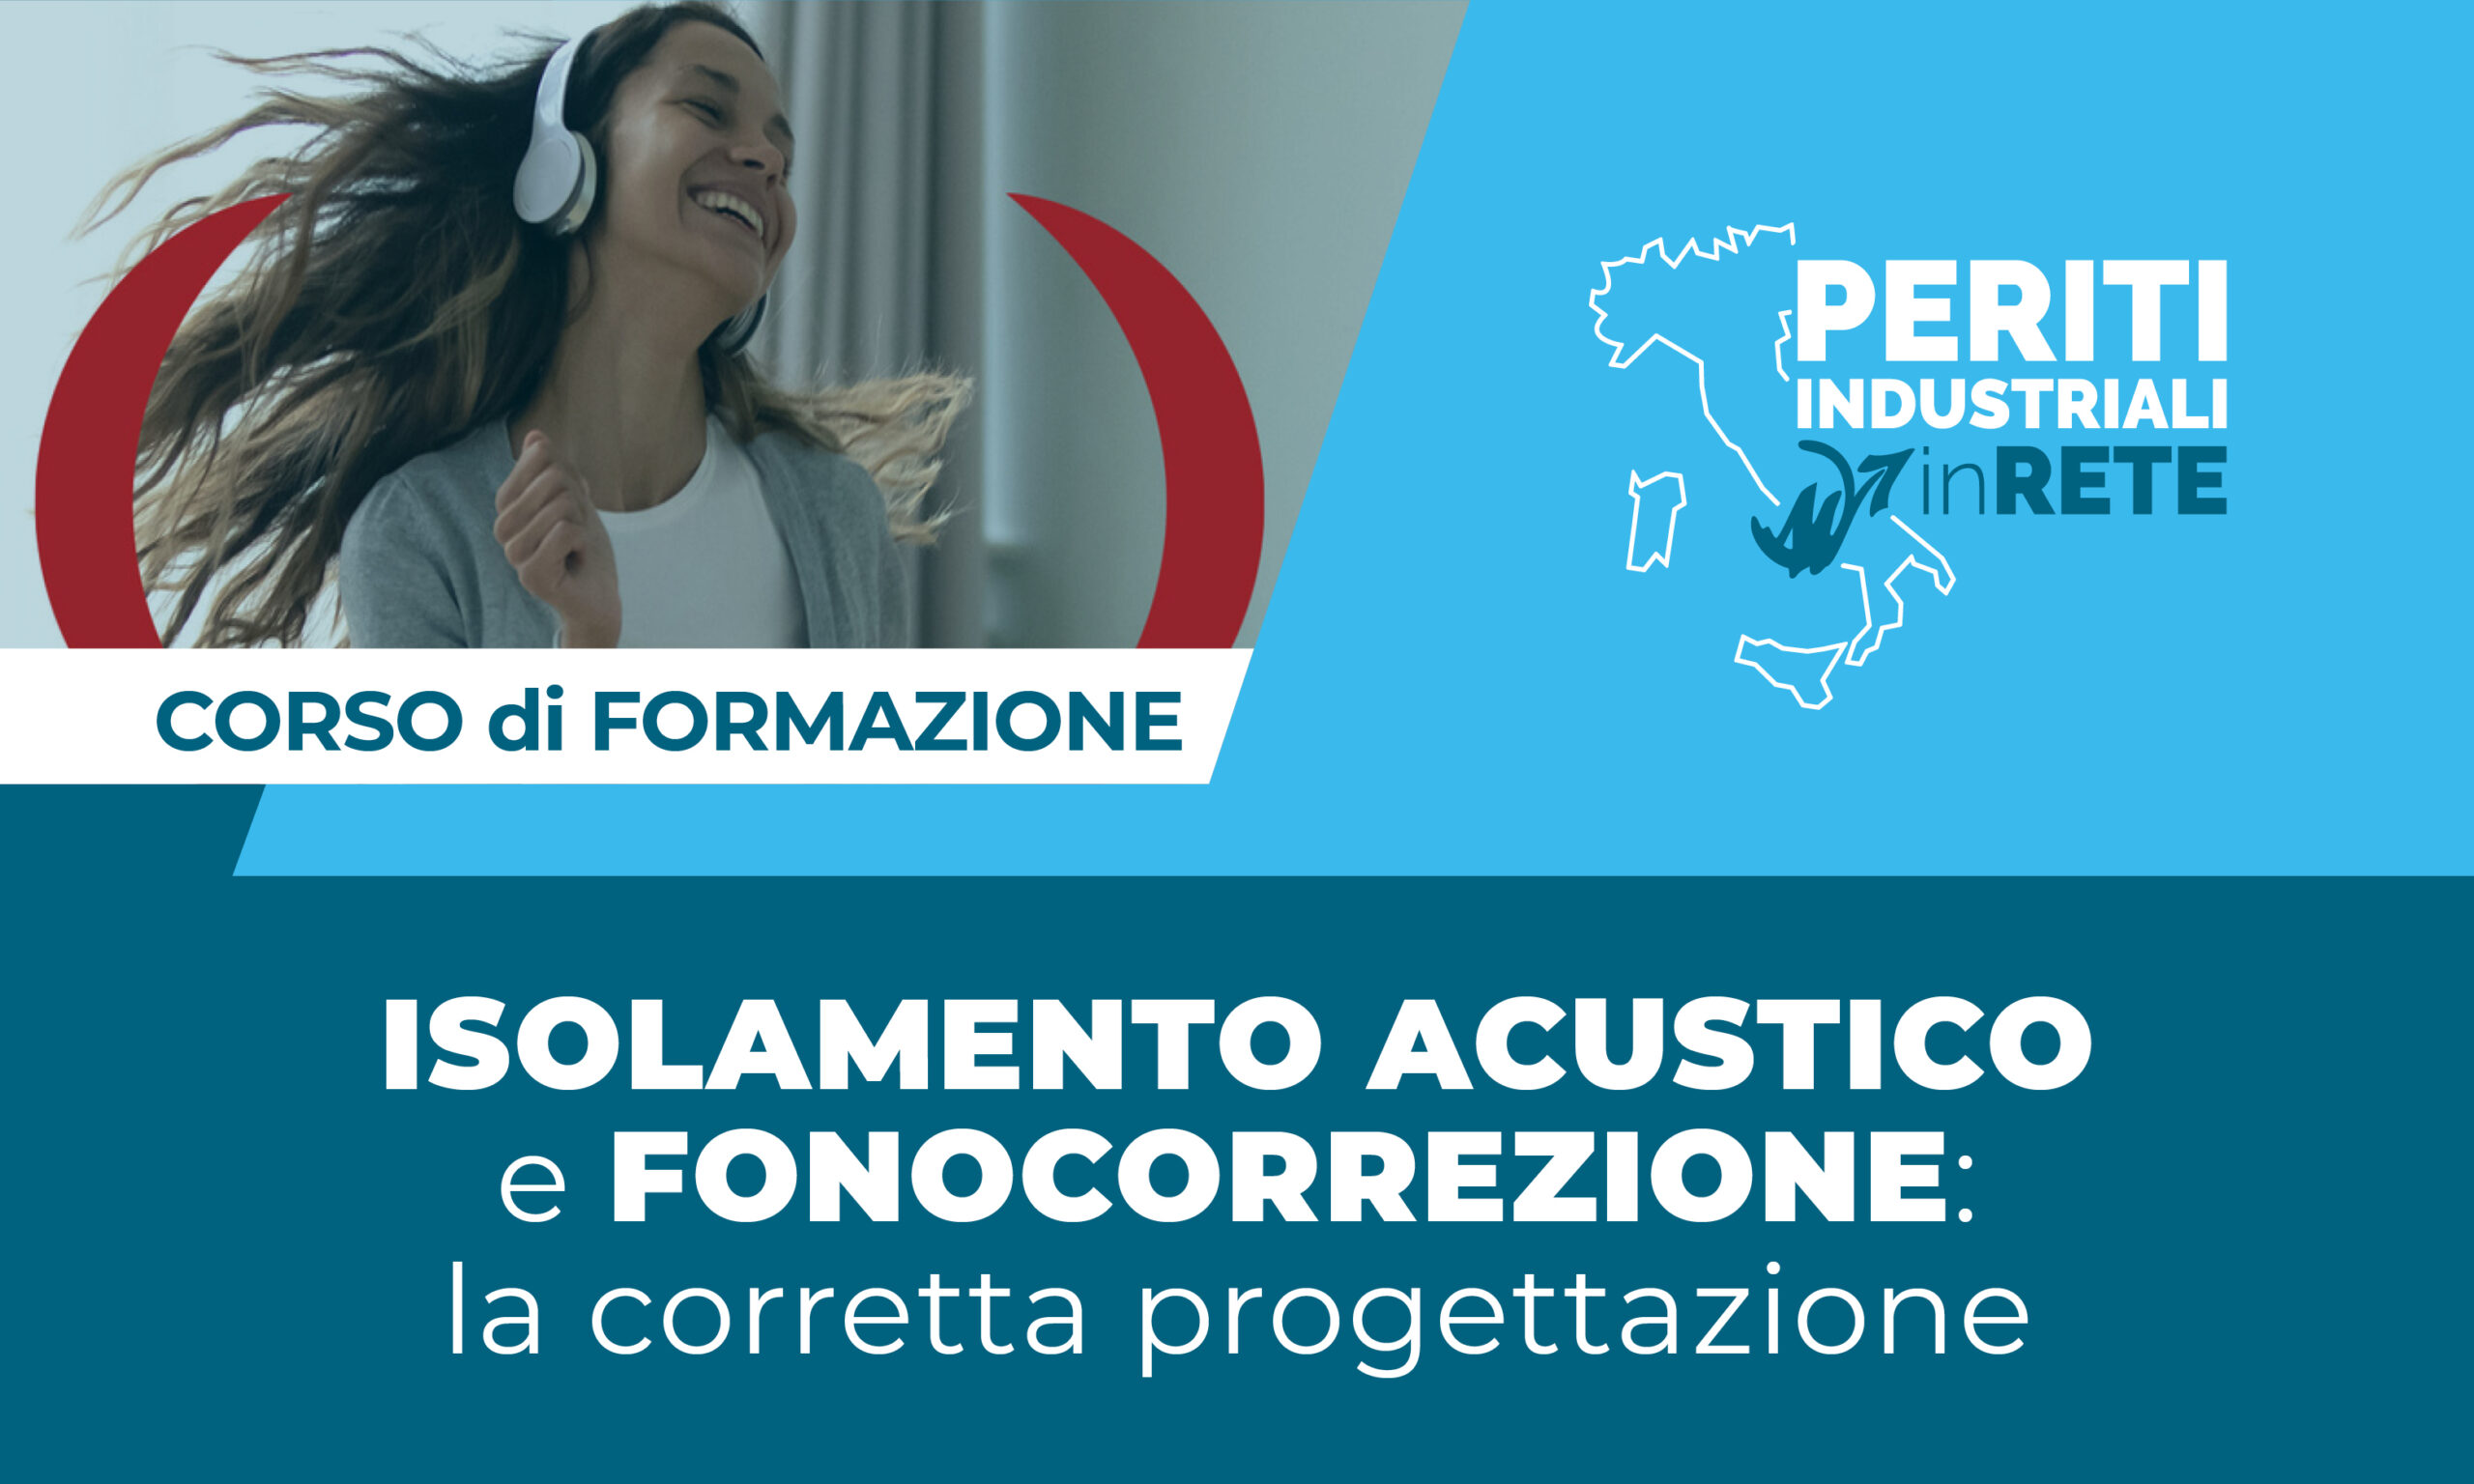 Corso di formazione isolamento acustico e fonocorrezione - Pavia